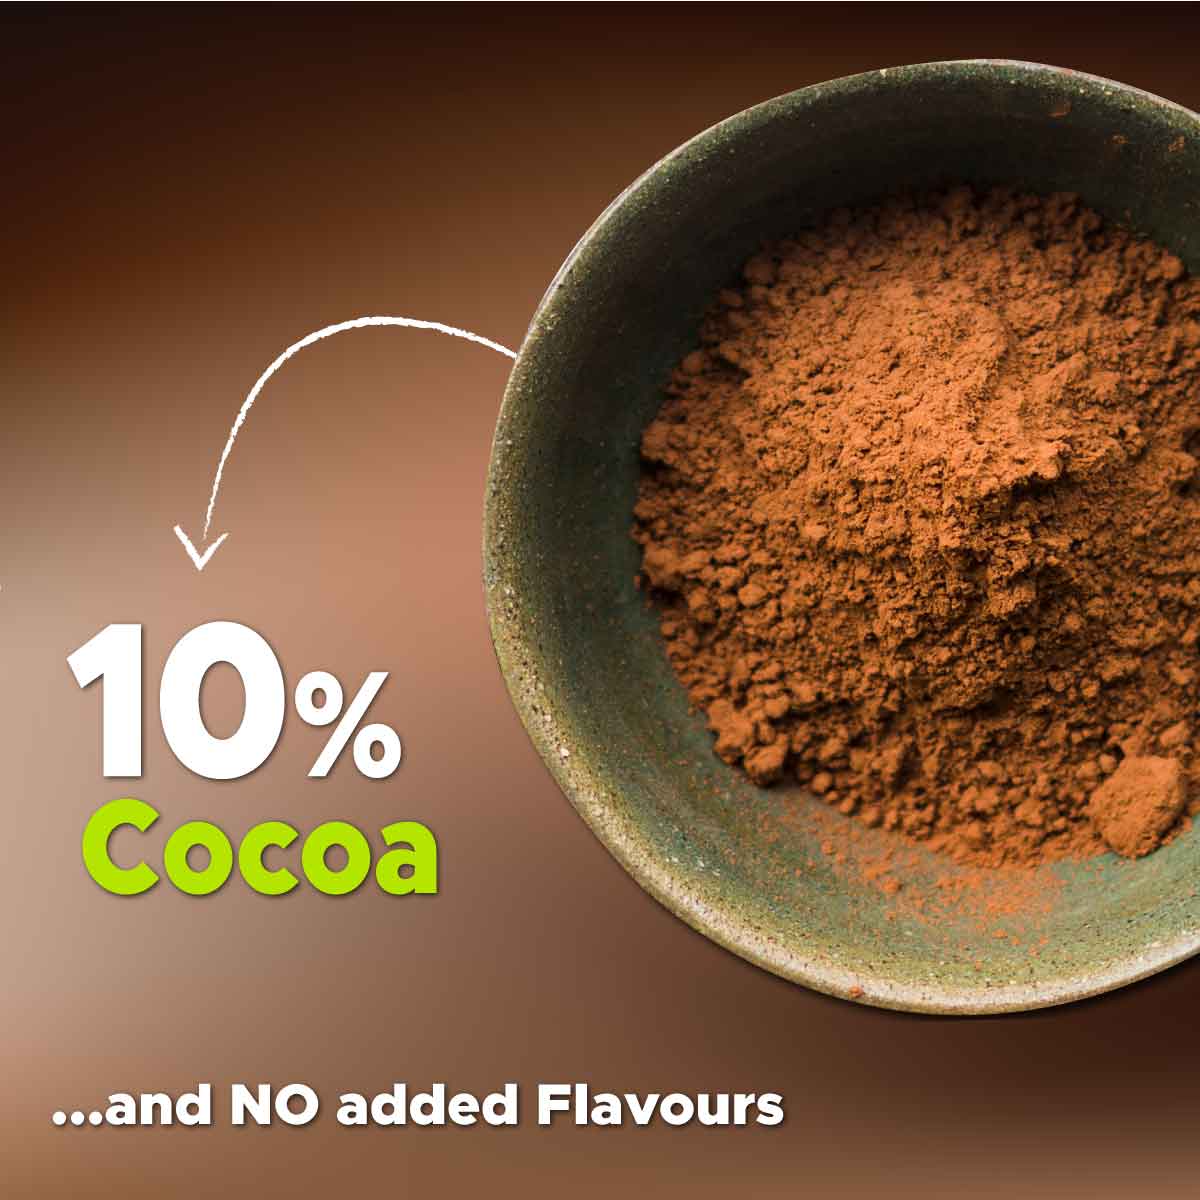 chocolate flavoured muesli 100% cocoa